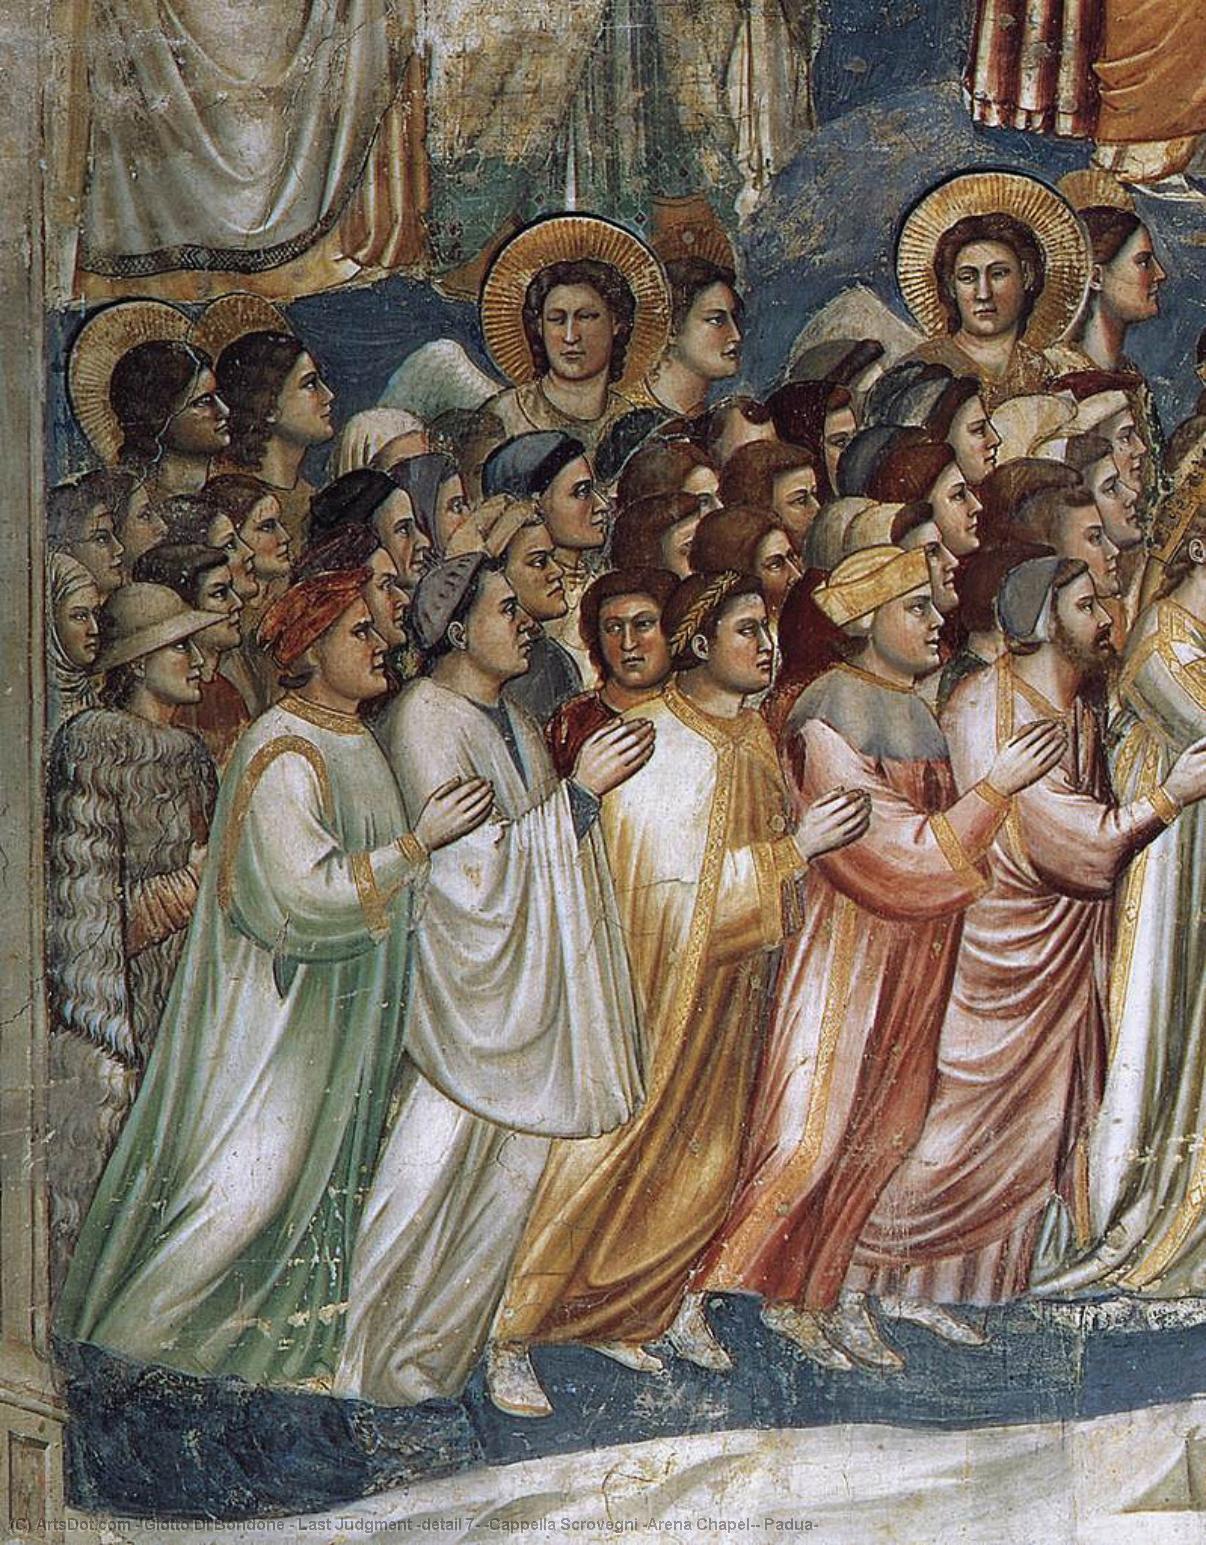 WikiOO.org - دایره المعارف هنرهای زیبا - نقاشی، آثار هنری Giotto Di Bondone - Last Judgment (detail 7) (Cappella Scrovegni (Arena Chapel), Padua)